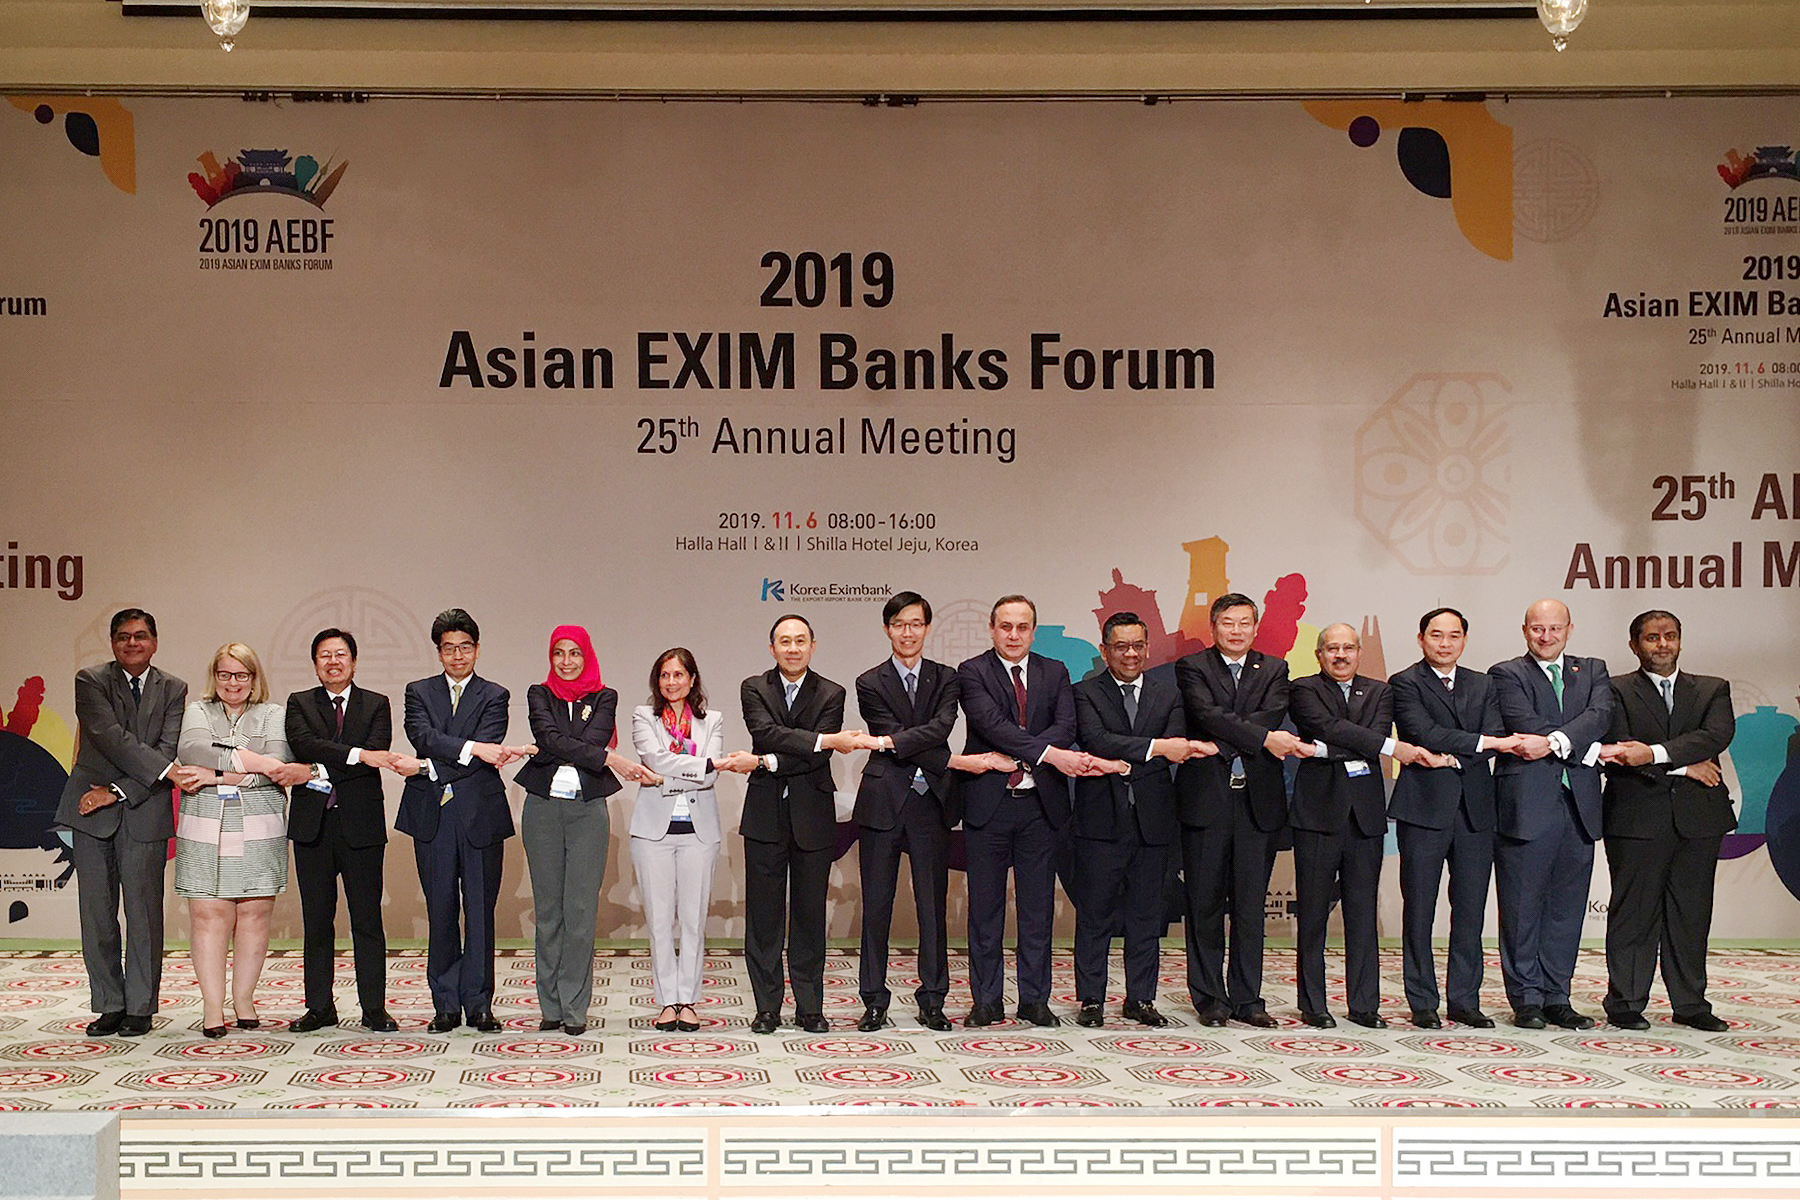 EXIM BANK ร่วมประชุมประจำปีธนาคารเพื่อการส่งออกและนําเข้าในเอเชีย ครั้งที่ 25